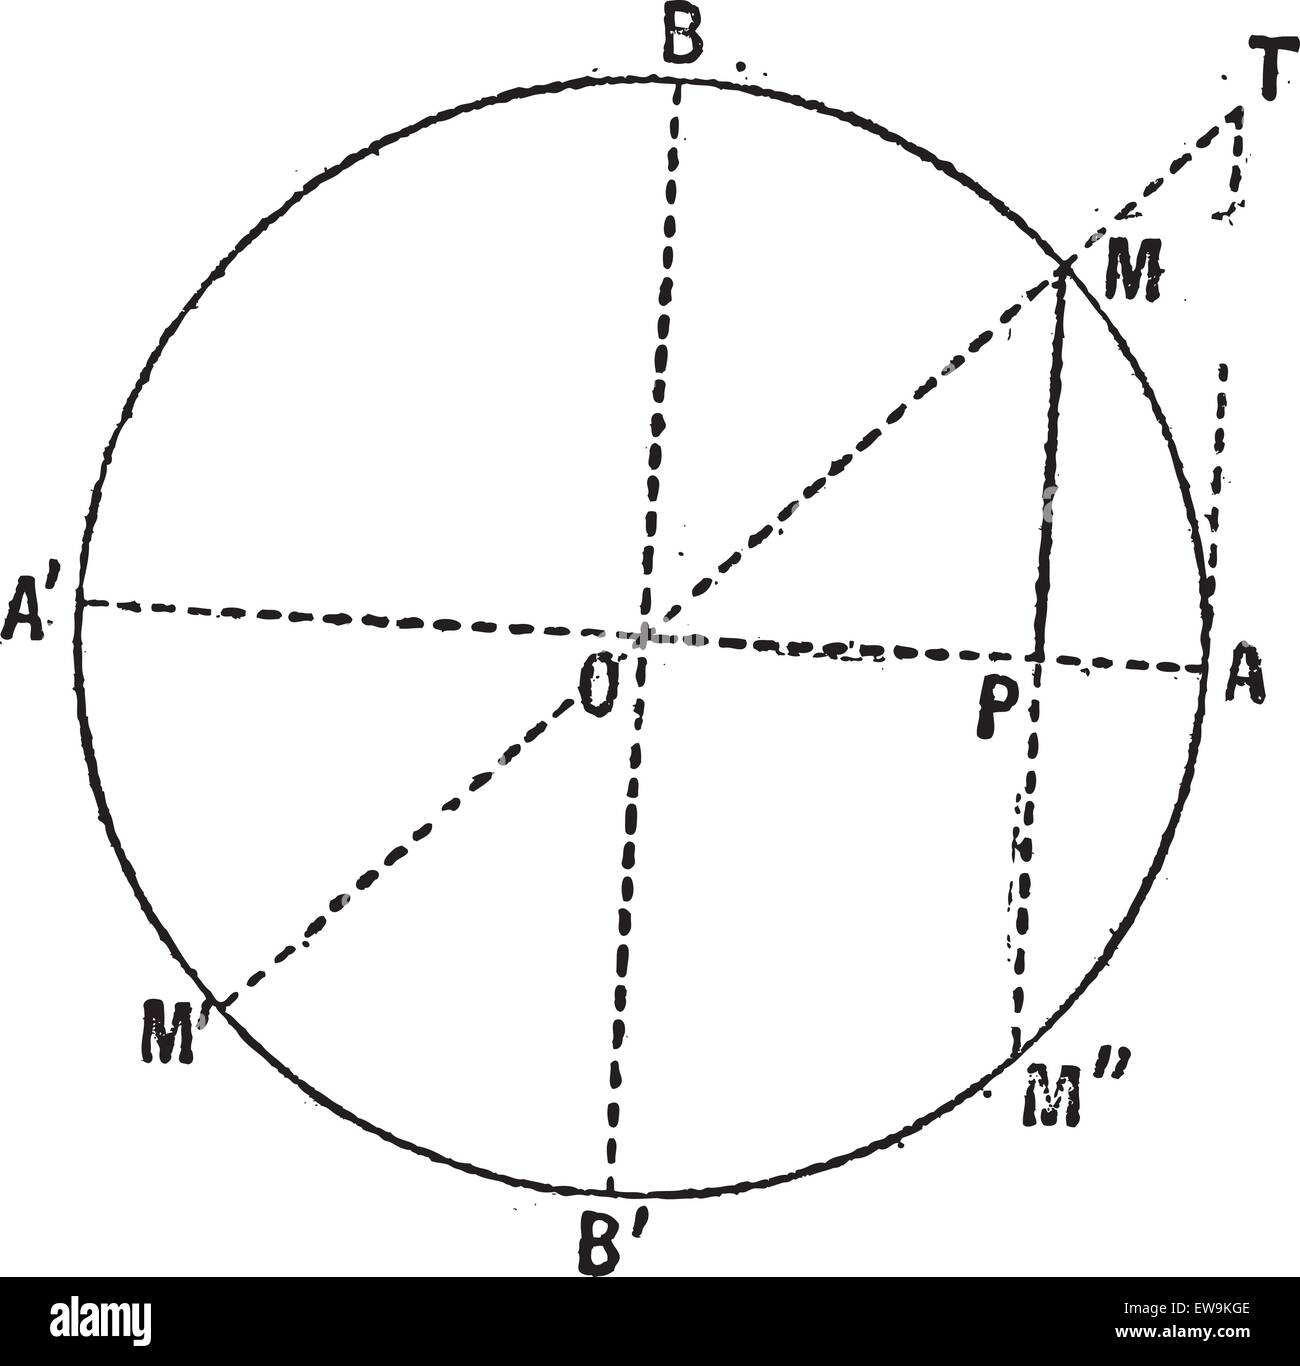 Vieille illustration gravée du diagramme de la fonction sinus (mathématiques) isolé sur un fond blanc. Dictionnaire des mots et des choses Illustration de Vecteur